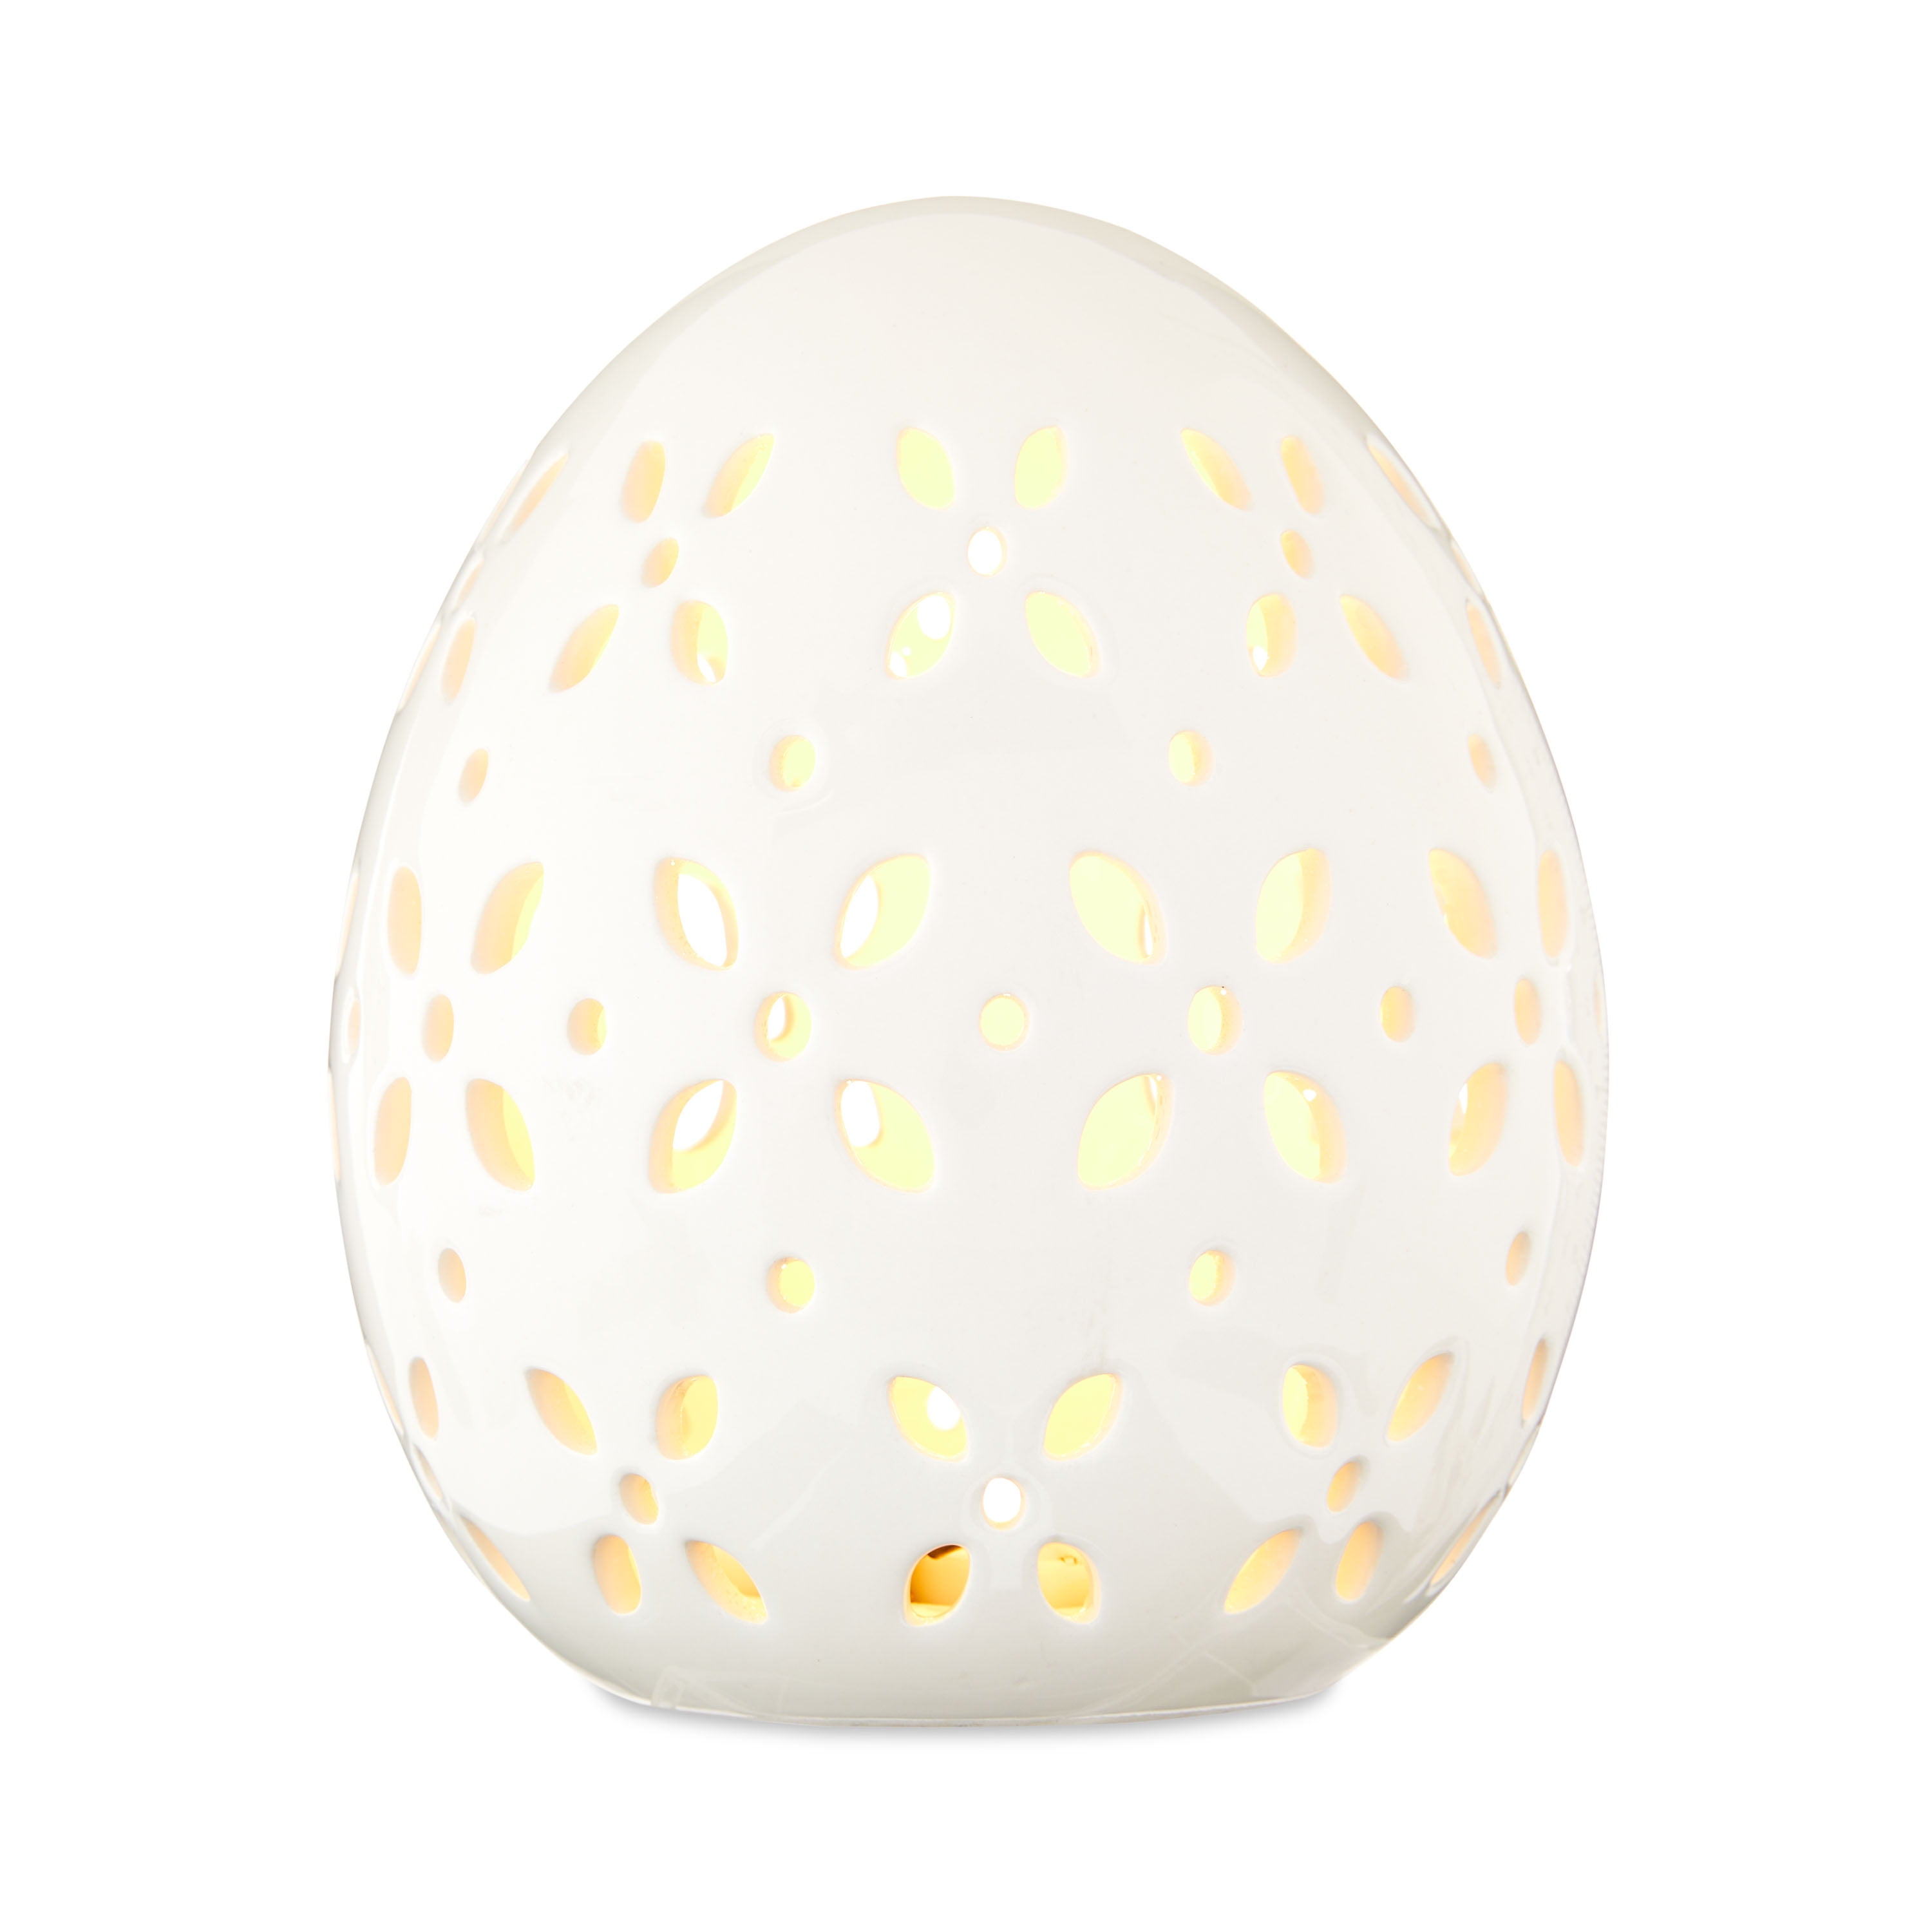 Way To Celebrate Easter Large Ceramic LED White Egg Decor